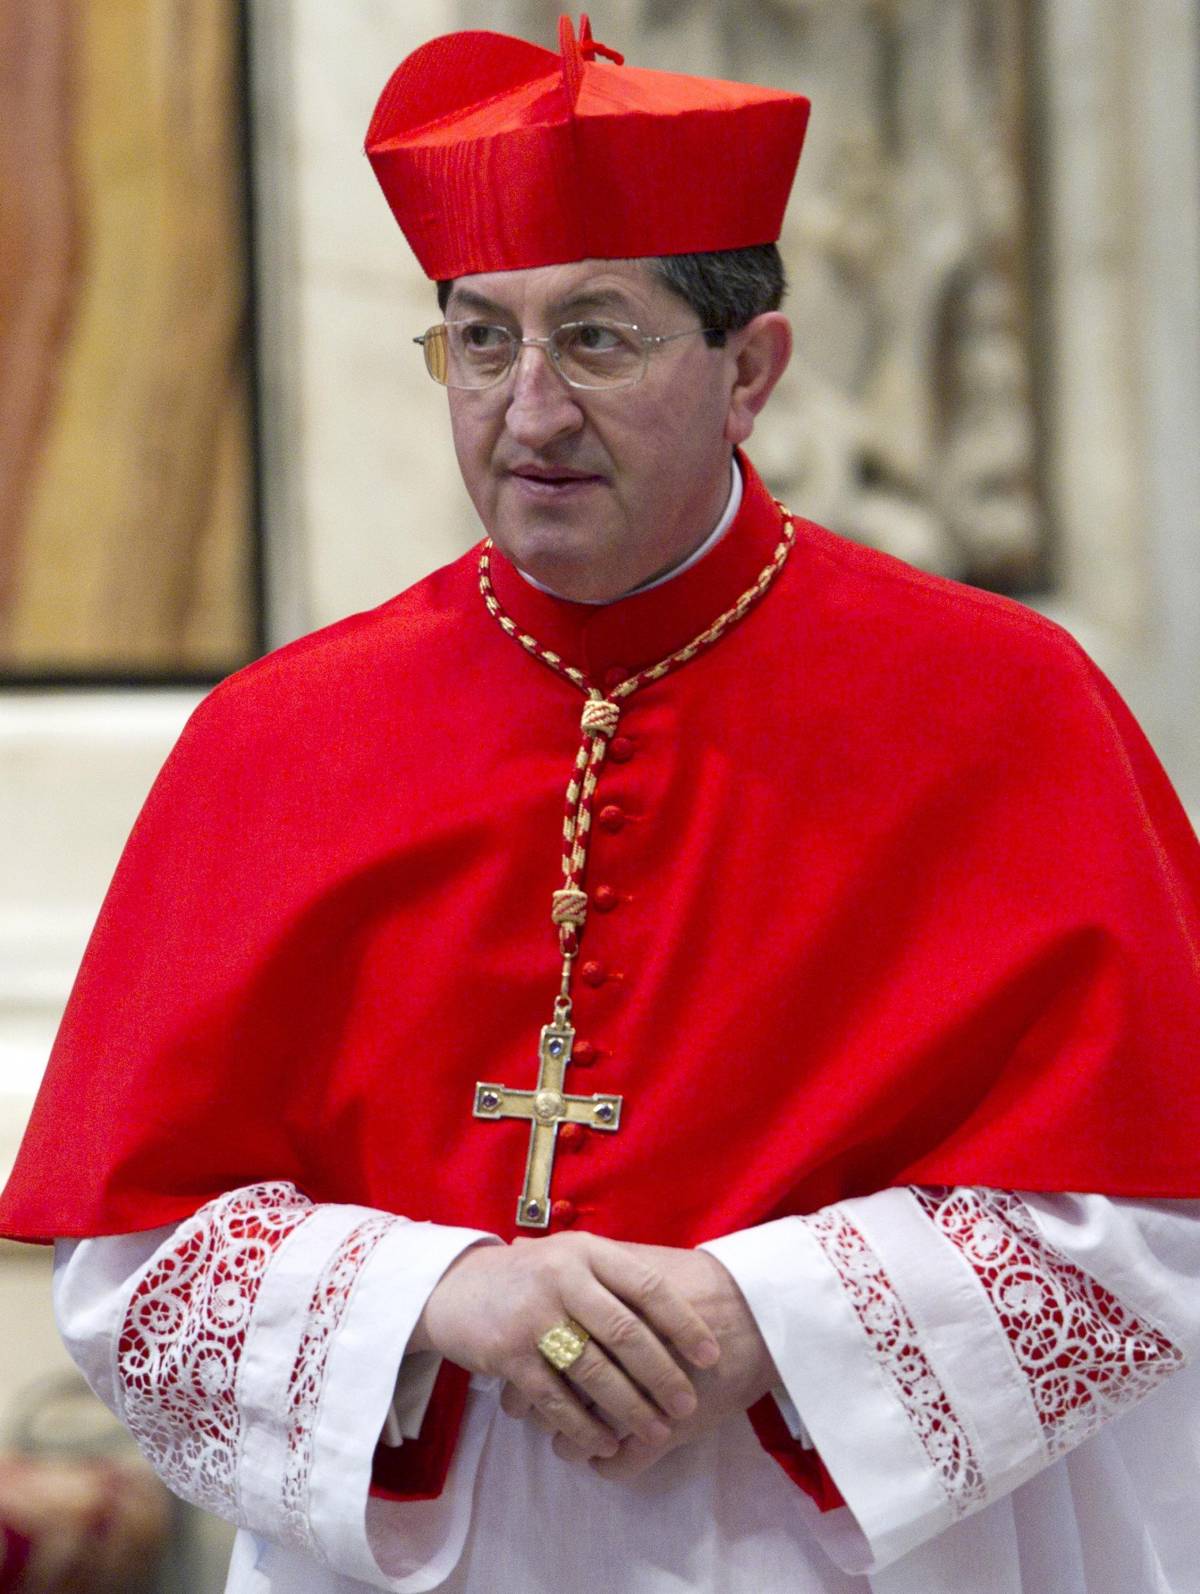 Migranti, il cardinale attacca Salvini alla Messa di Natale: "Giuseppe e Maria furono accolti"